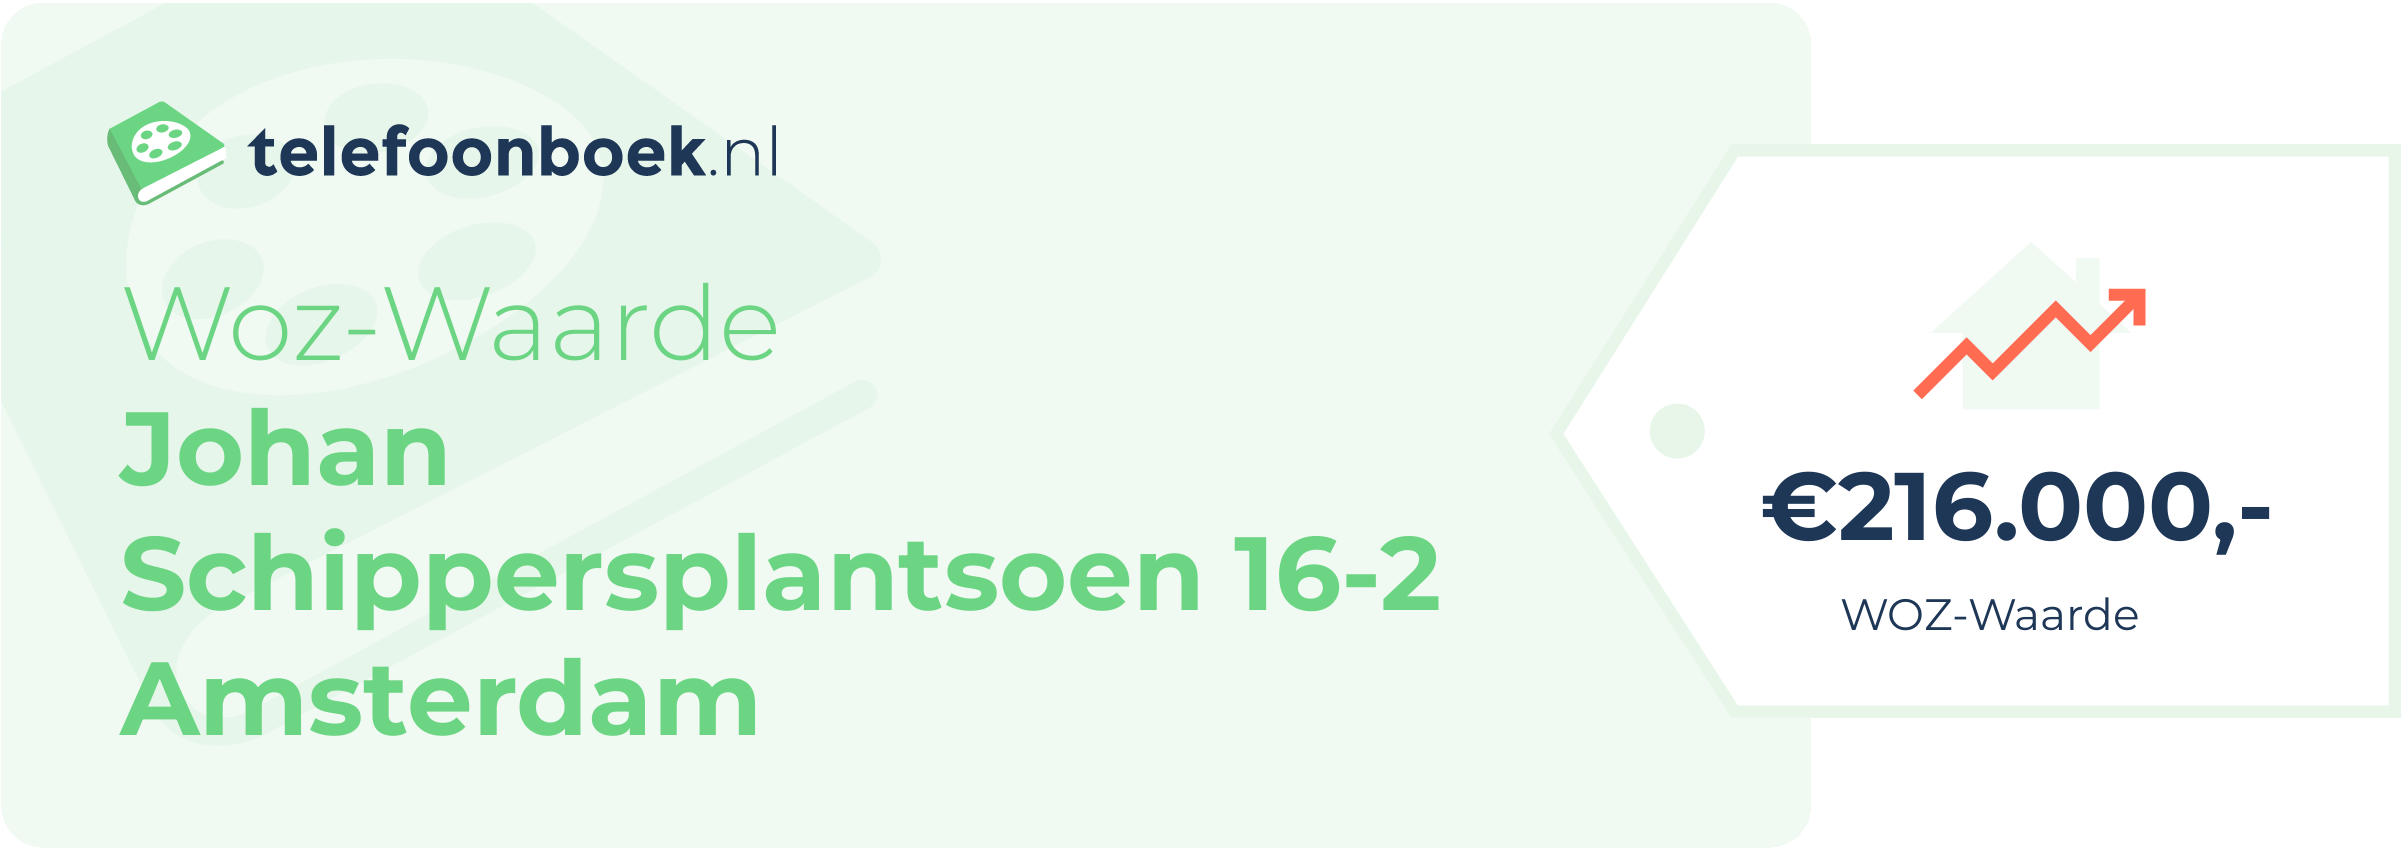 WOZ-waarde Johan Schippersplantsoen 16-2 Amsterdam